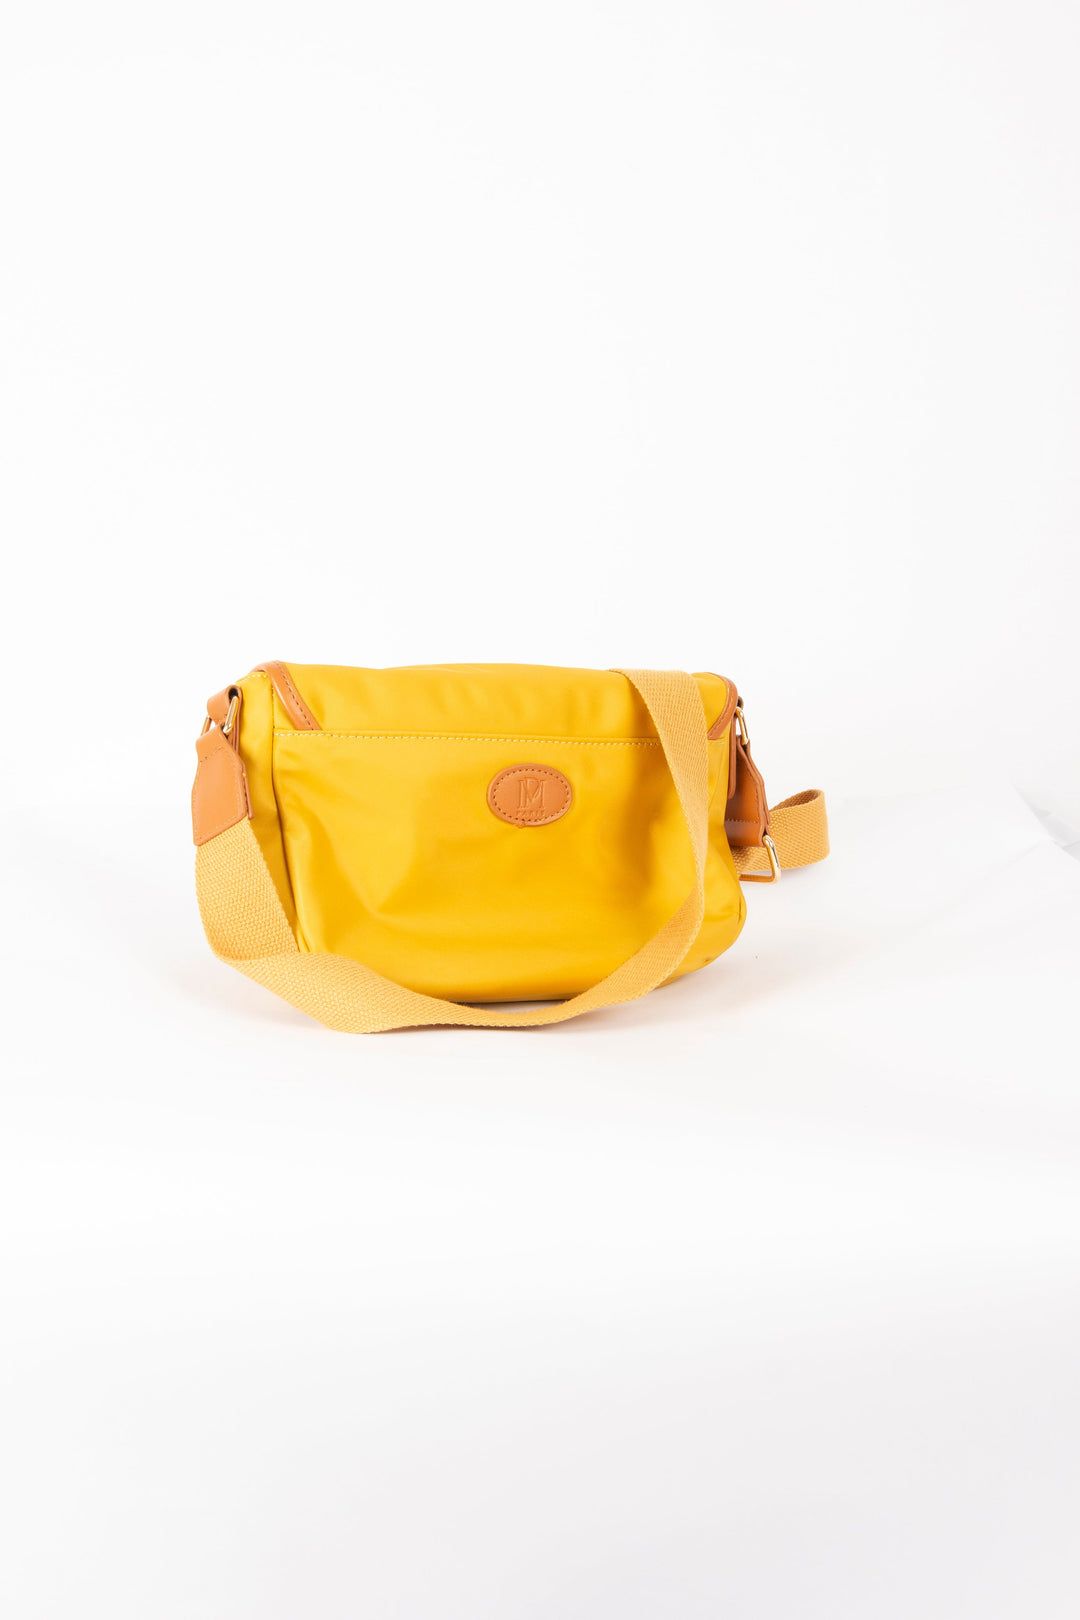 Gelbe Handtasche - TU